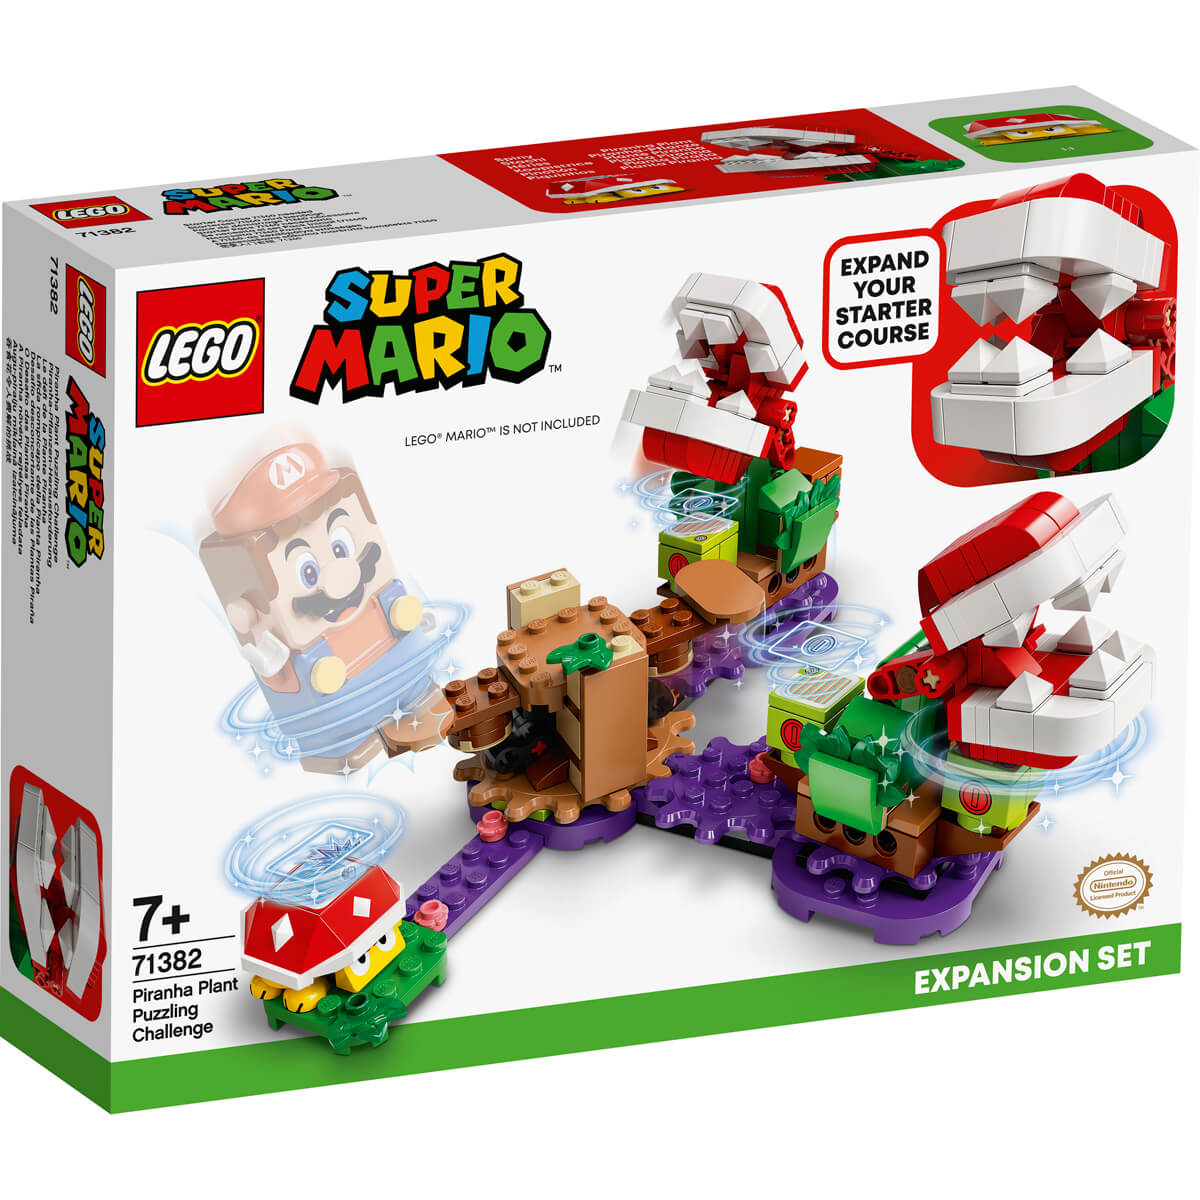 ΠΑΙΔΙ | Παιχνίδια | LEGO | SUPER MARIO 71382 Piranha Plant Puzzling Challenge Expansion Set